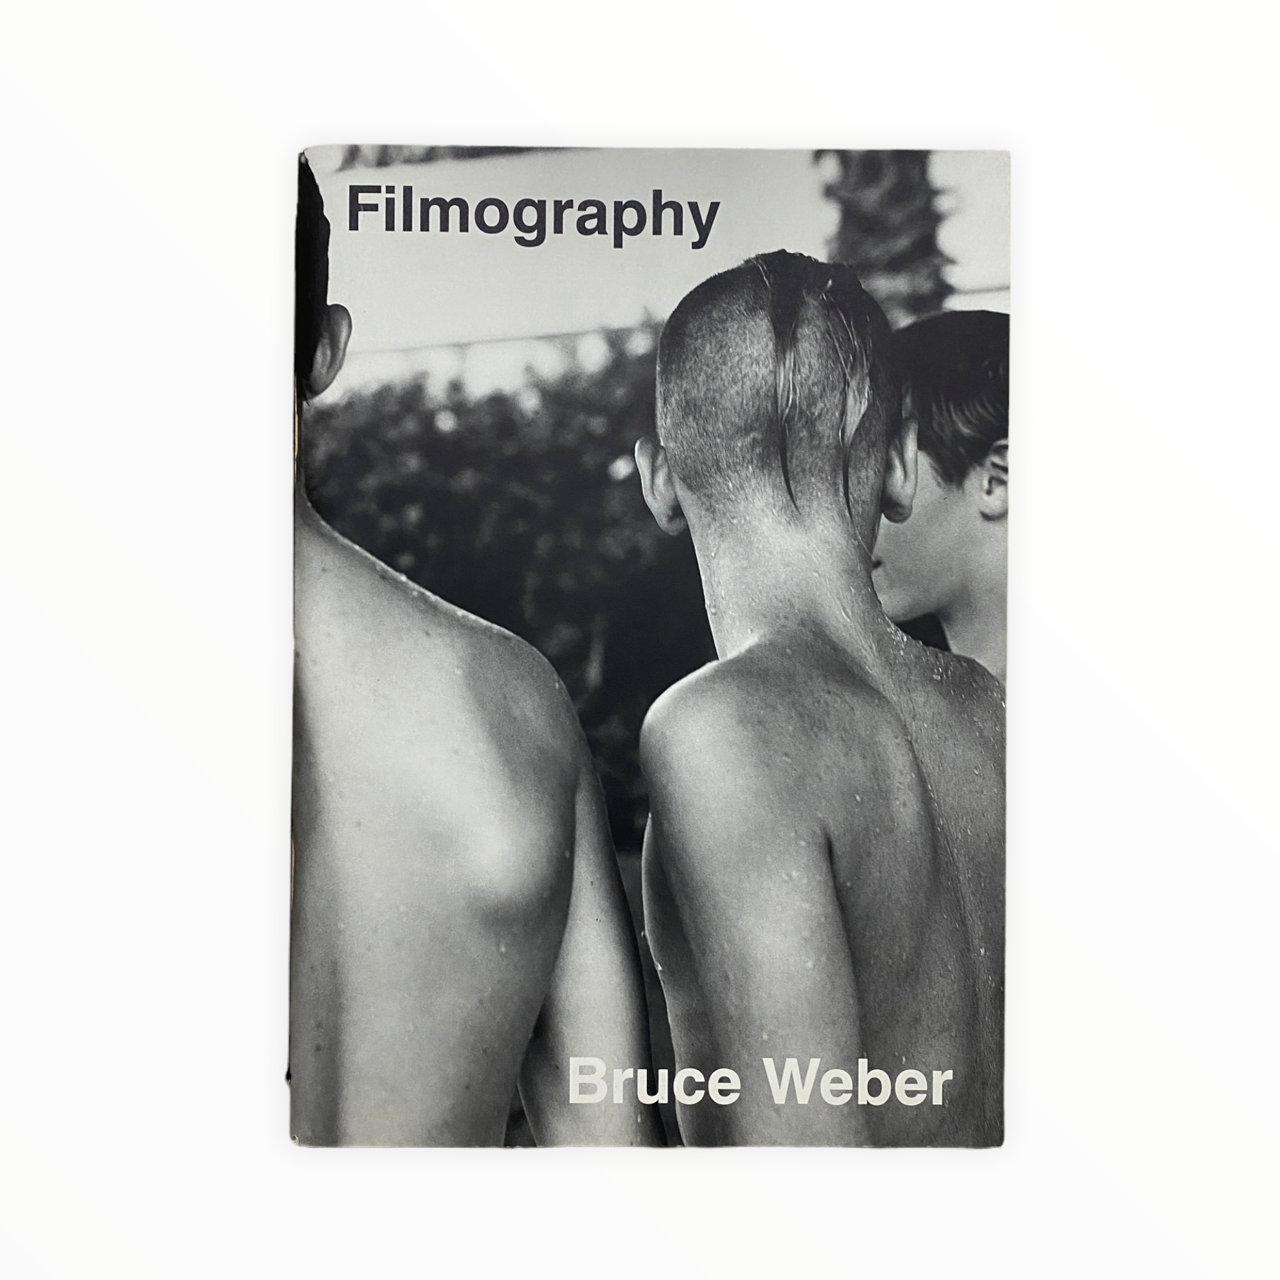 フォーマットfo【希少】ブルース・ウェバー写真集“Filmography”フィルモグラフィー